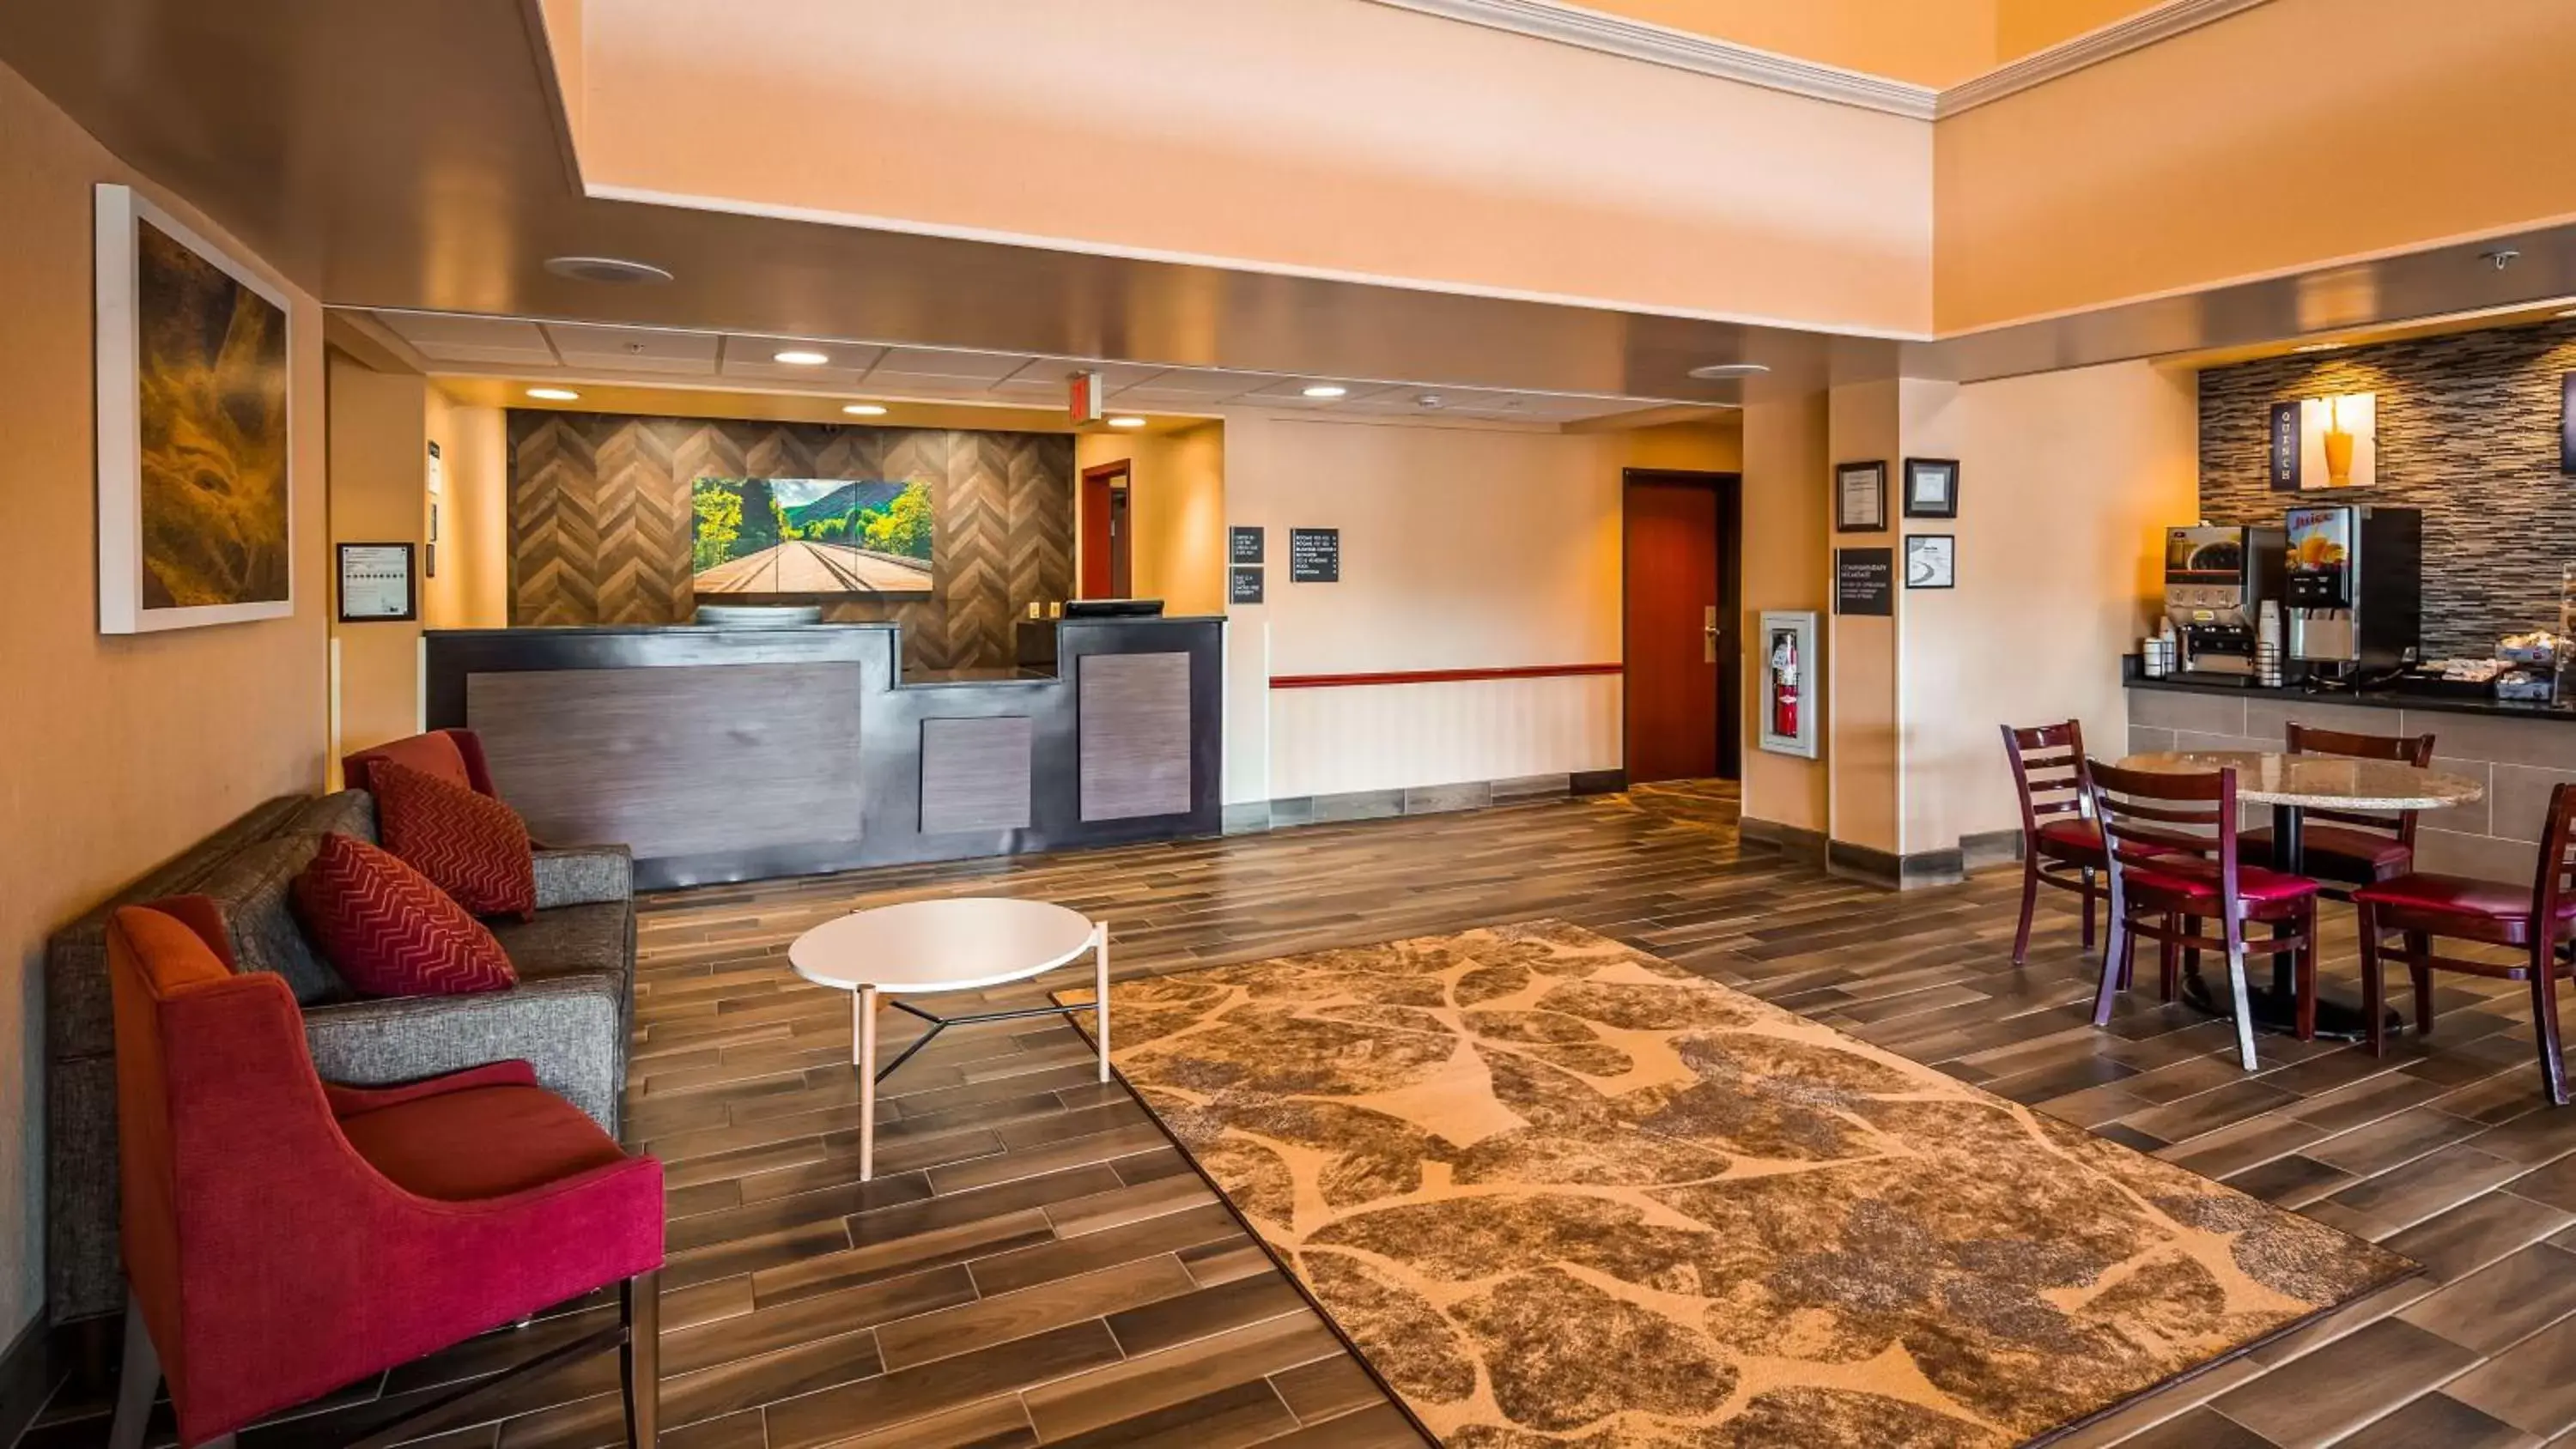 Lobby or reception, Lobby/Reception in Best Western Danville Inn